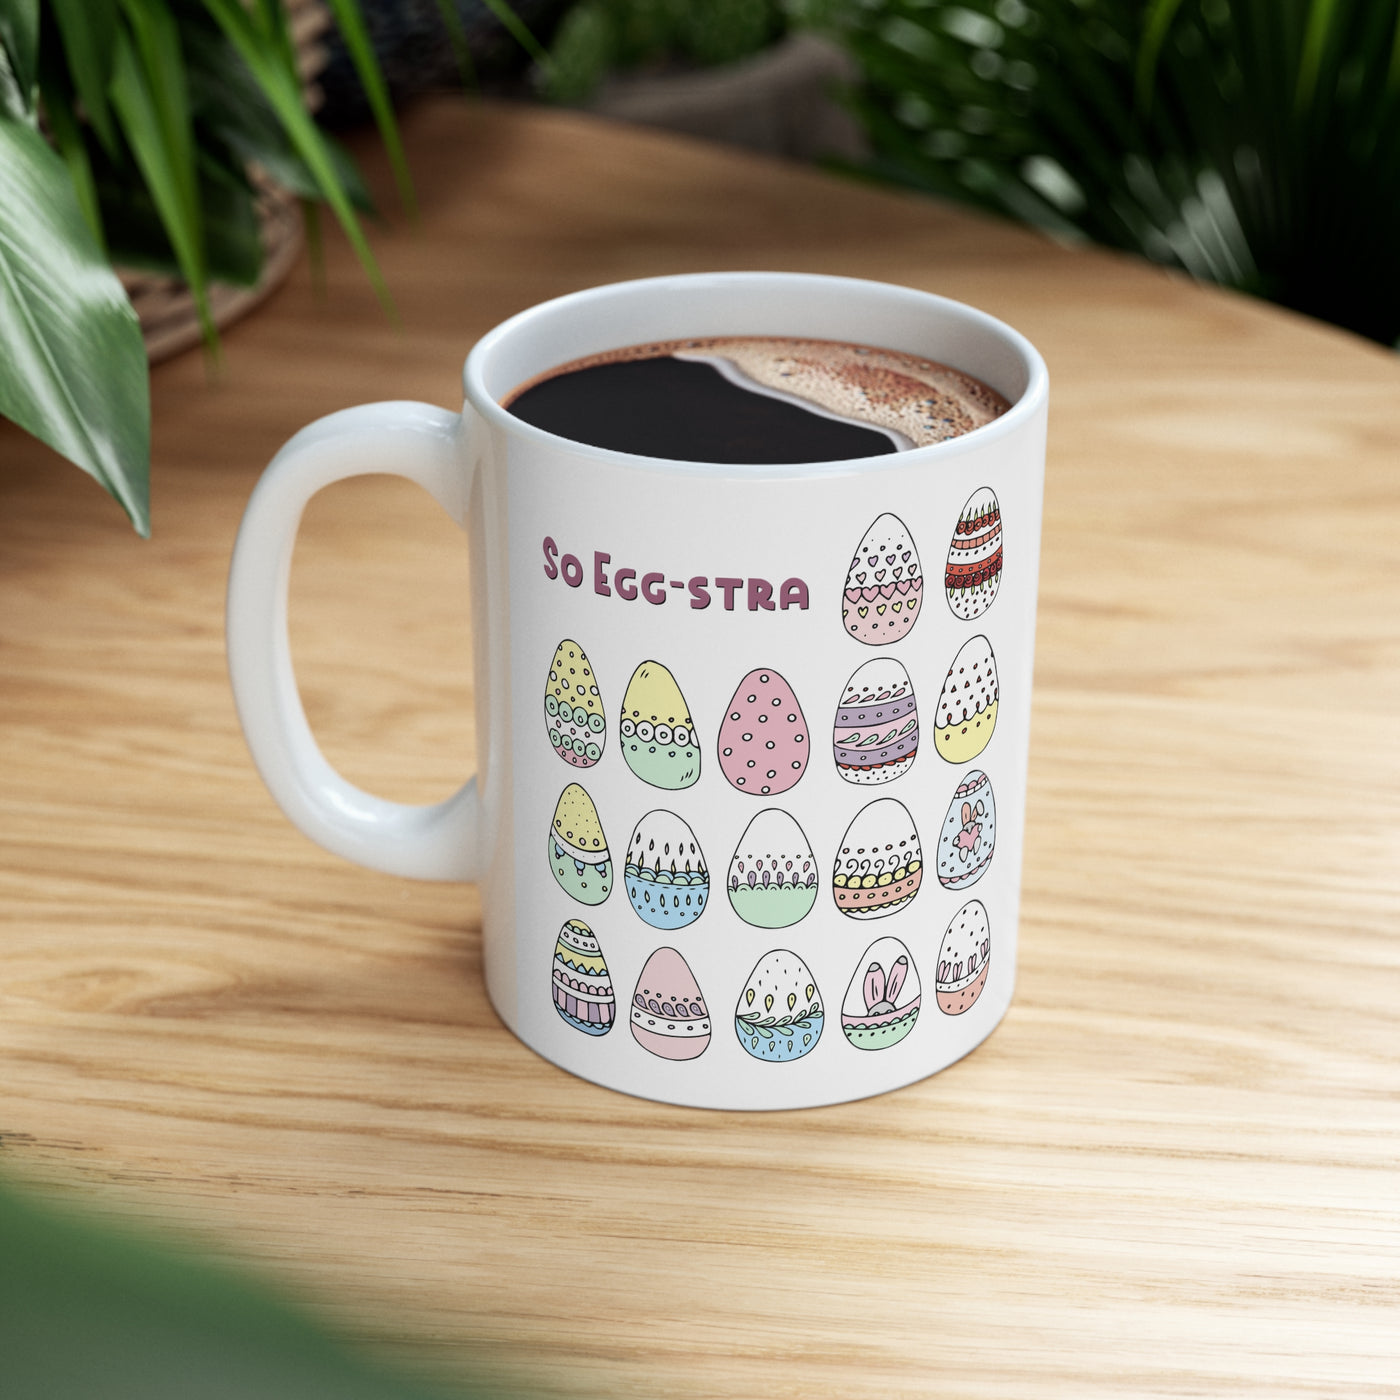 So Eggstra 11oz Ceramic Mug